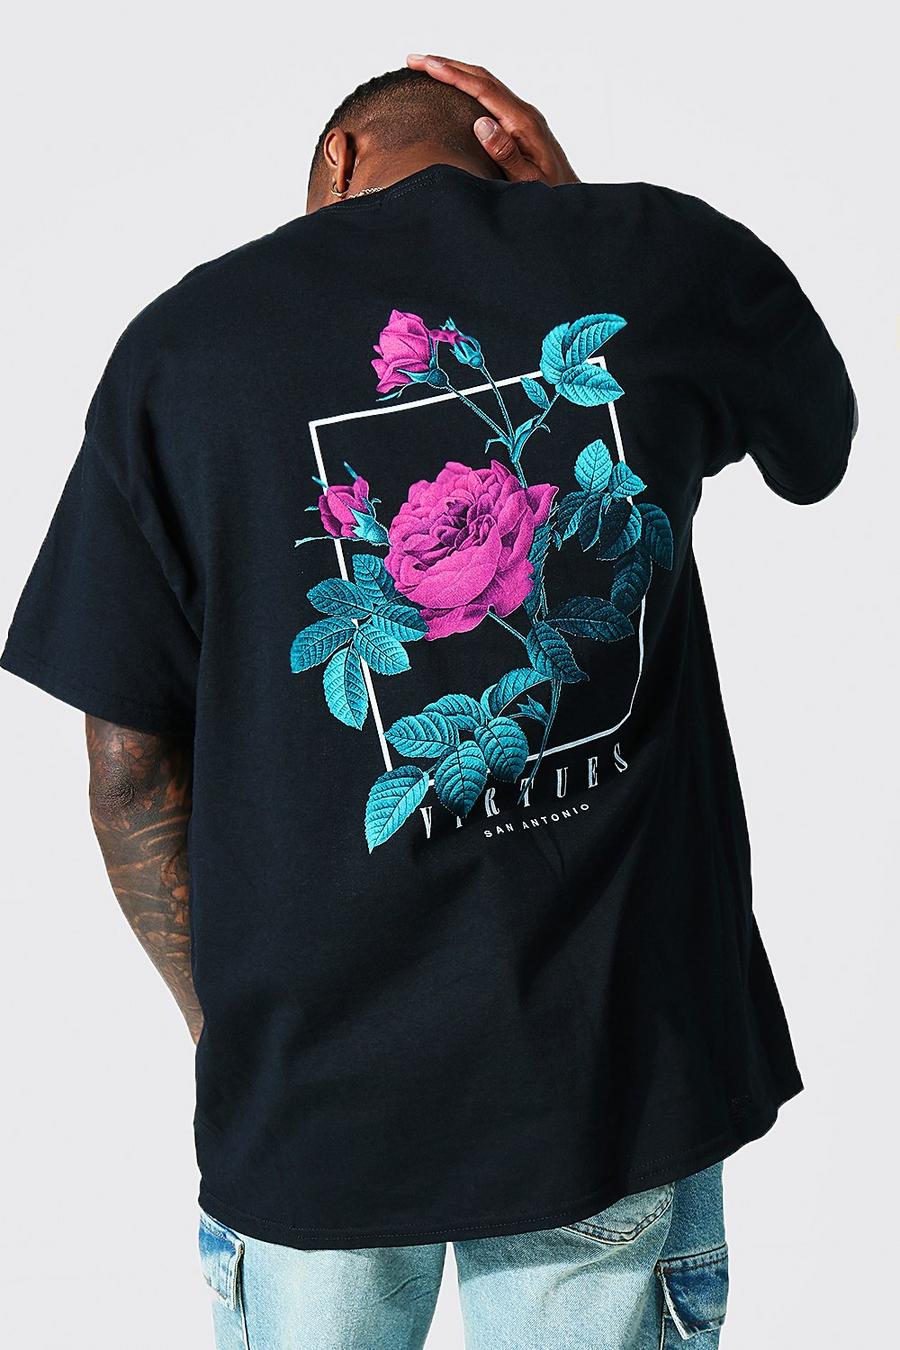 Camiseta oversize con estampado gráfico Virtues, Black